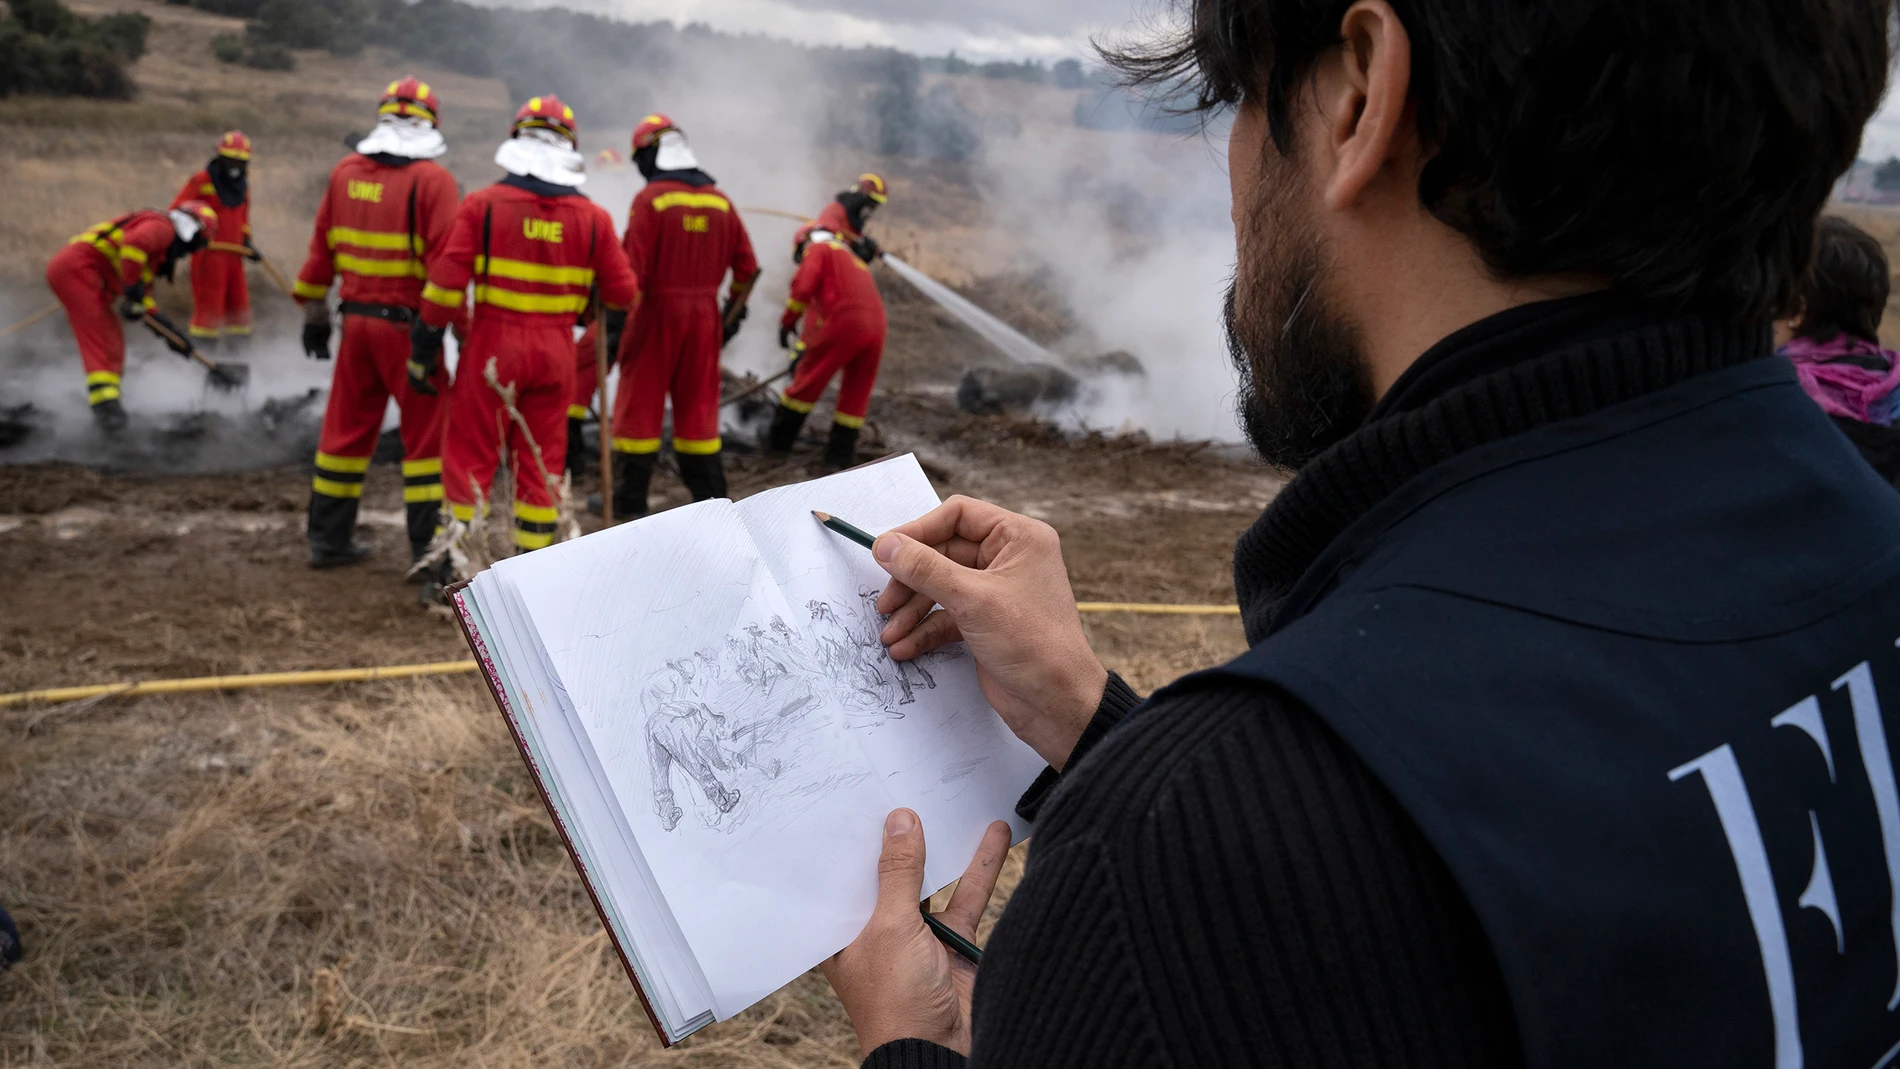 Retrato de la UME en uno de sus entrenamientos de contención del fuego por parte de la Fundación Ferrer-Dalmau. Fotografía: Zaida del Río (Universidad Nebrija)